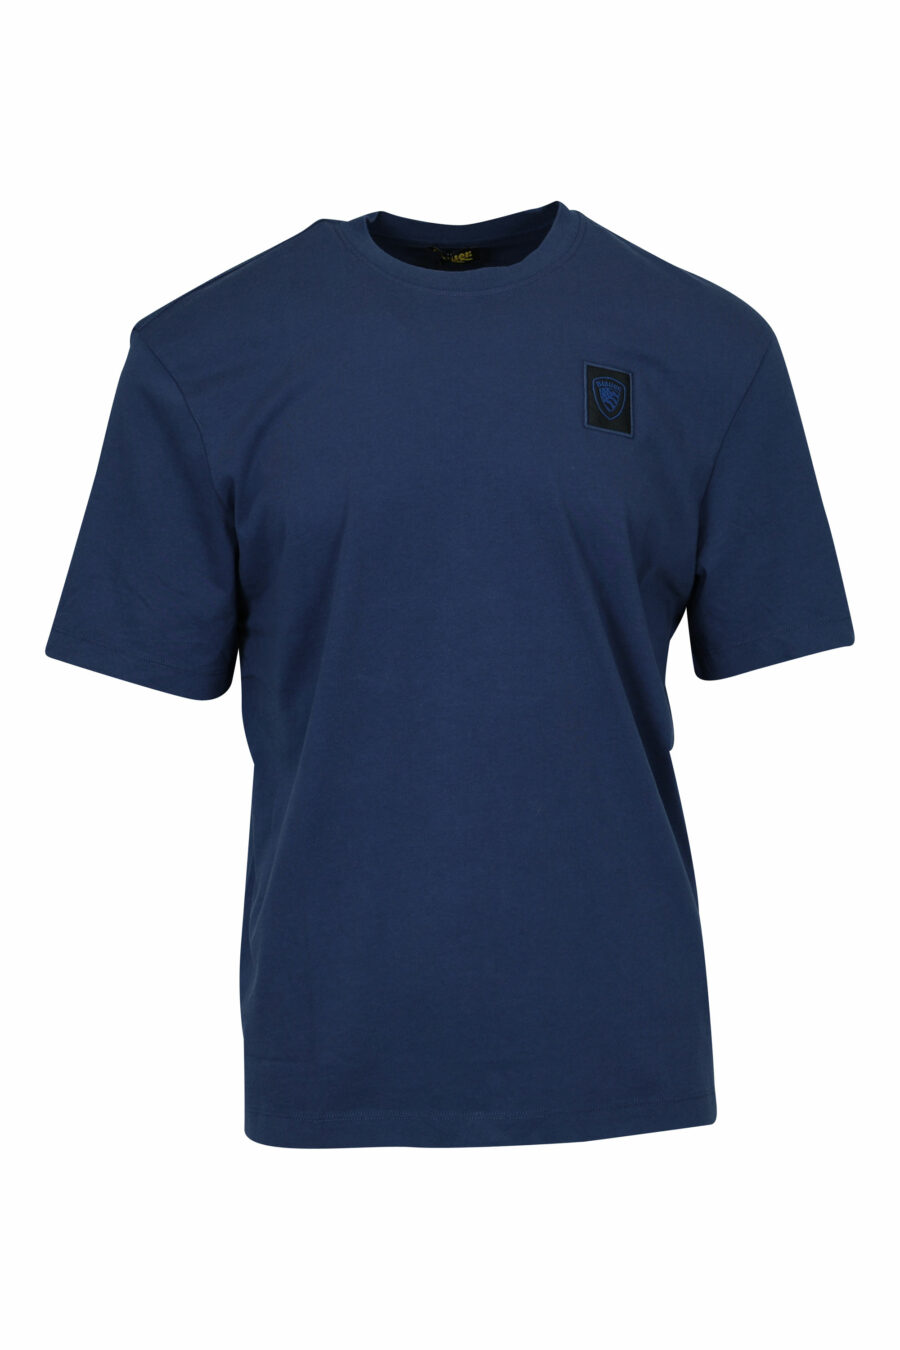 Camiseta azul con minilogo escudo bordado - 8058610829575